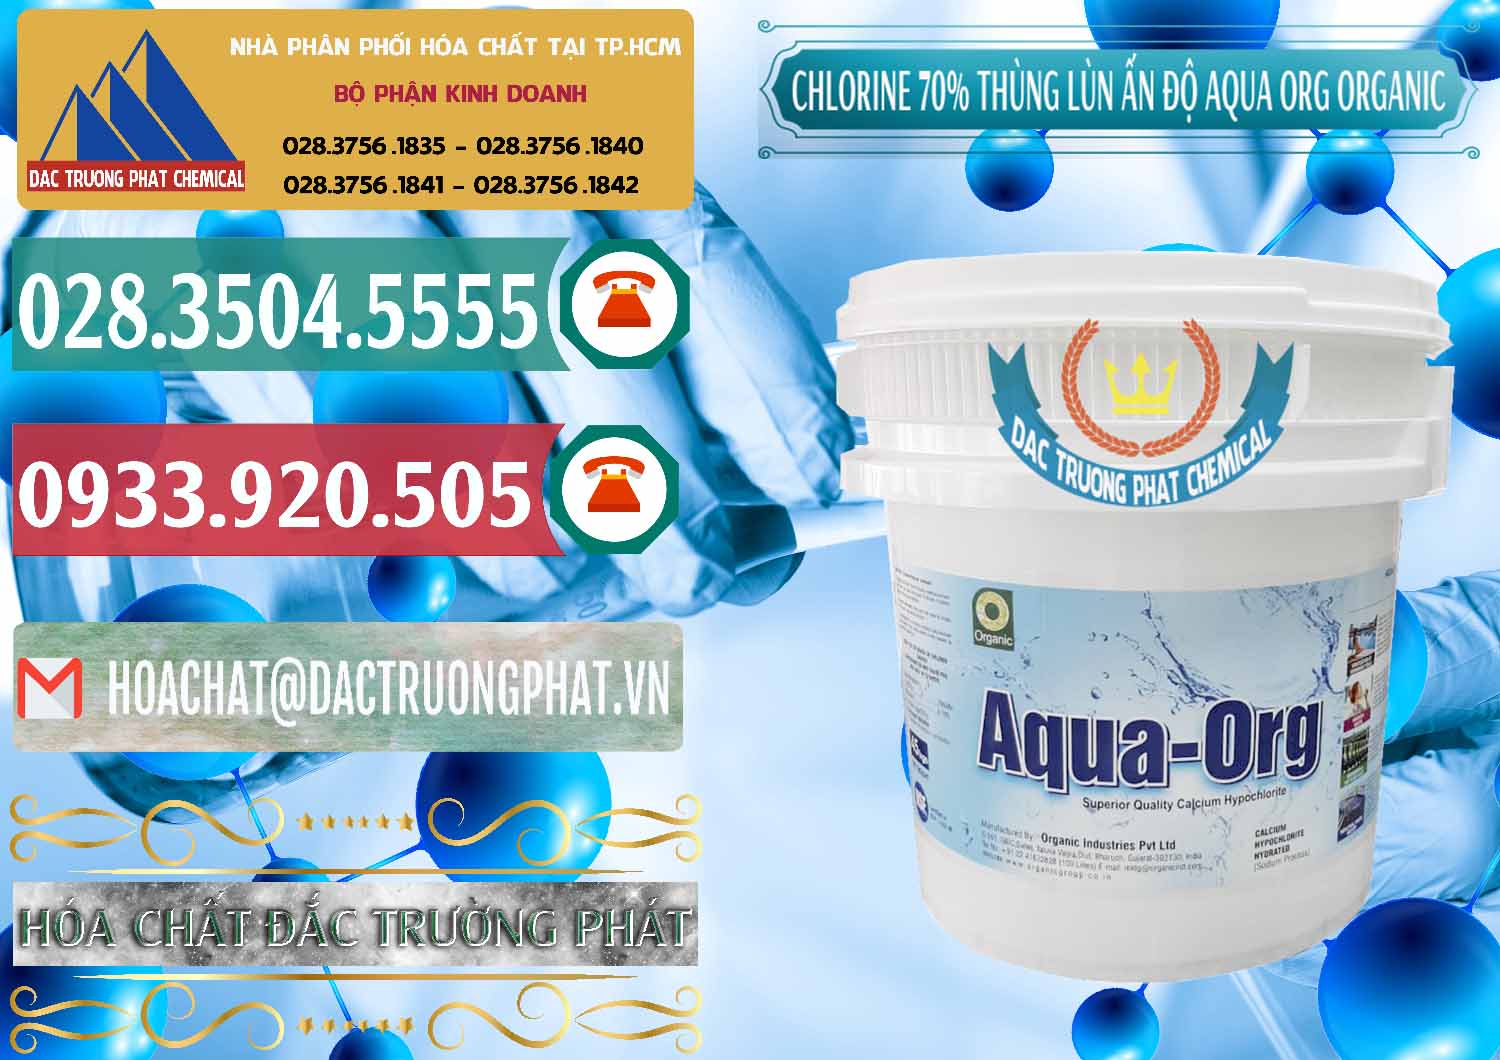 Cty chuyên kinh doanh & bán Chlorine – Clorin 70% Thùng Lùn Ấn Độ Aqua ORG Organic India - 0212 - Công ty chuyên phân phối _ cung ứng hóa chất tại TP.HCM - muabanhoachat.vn